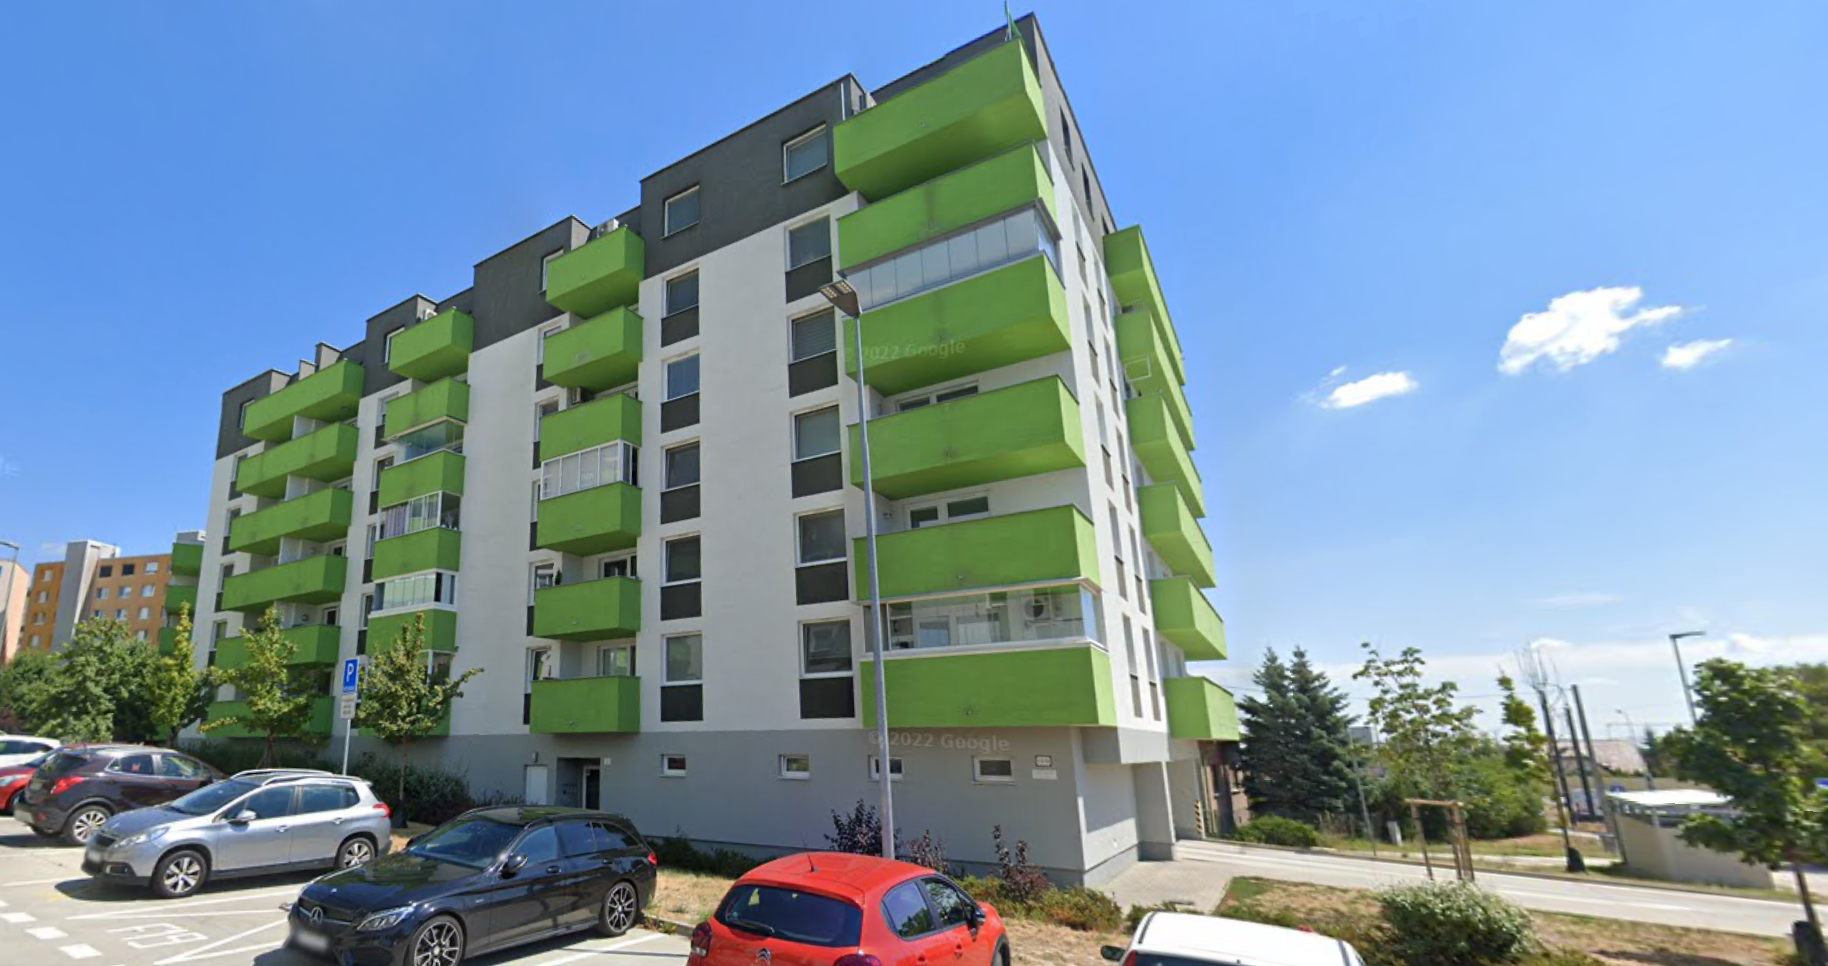 NOVOSTAVBA 2- izbový byt s balkónom na Rustaveliho v Rači